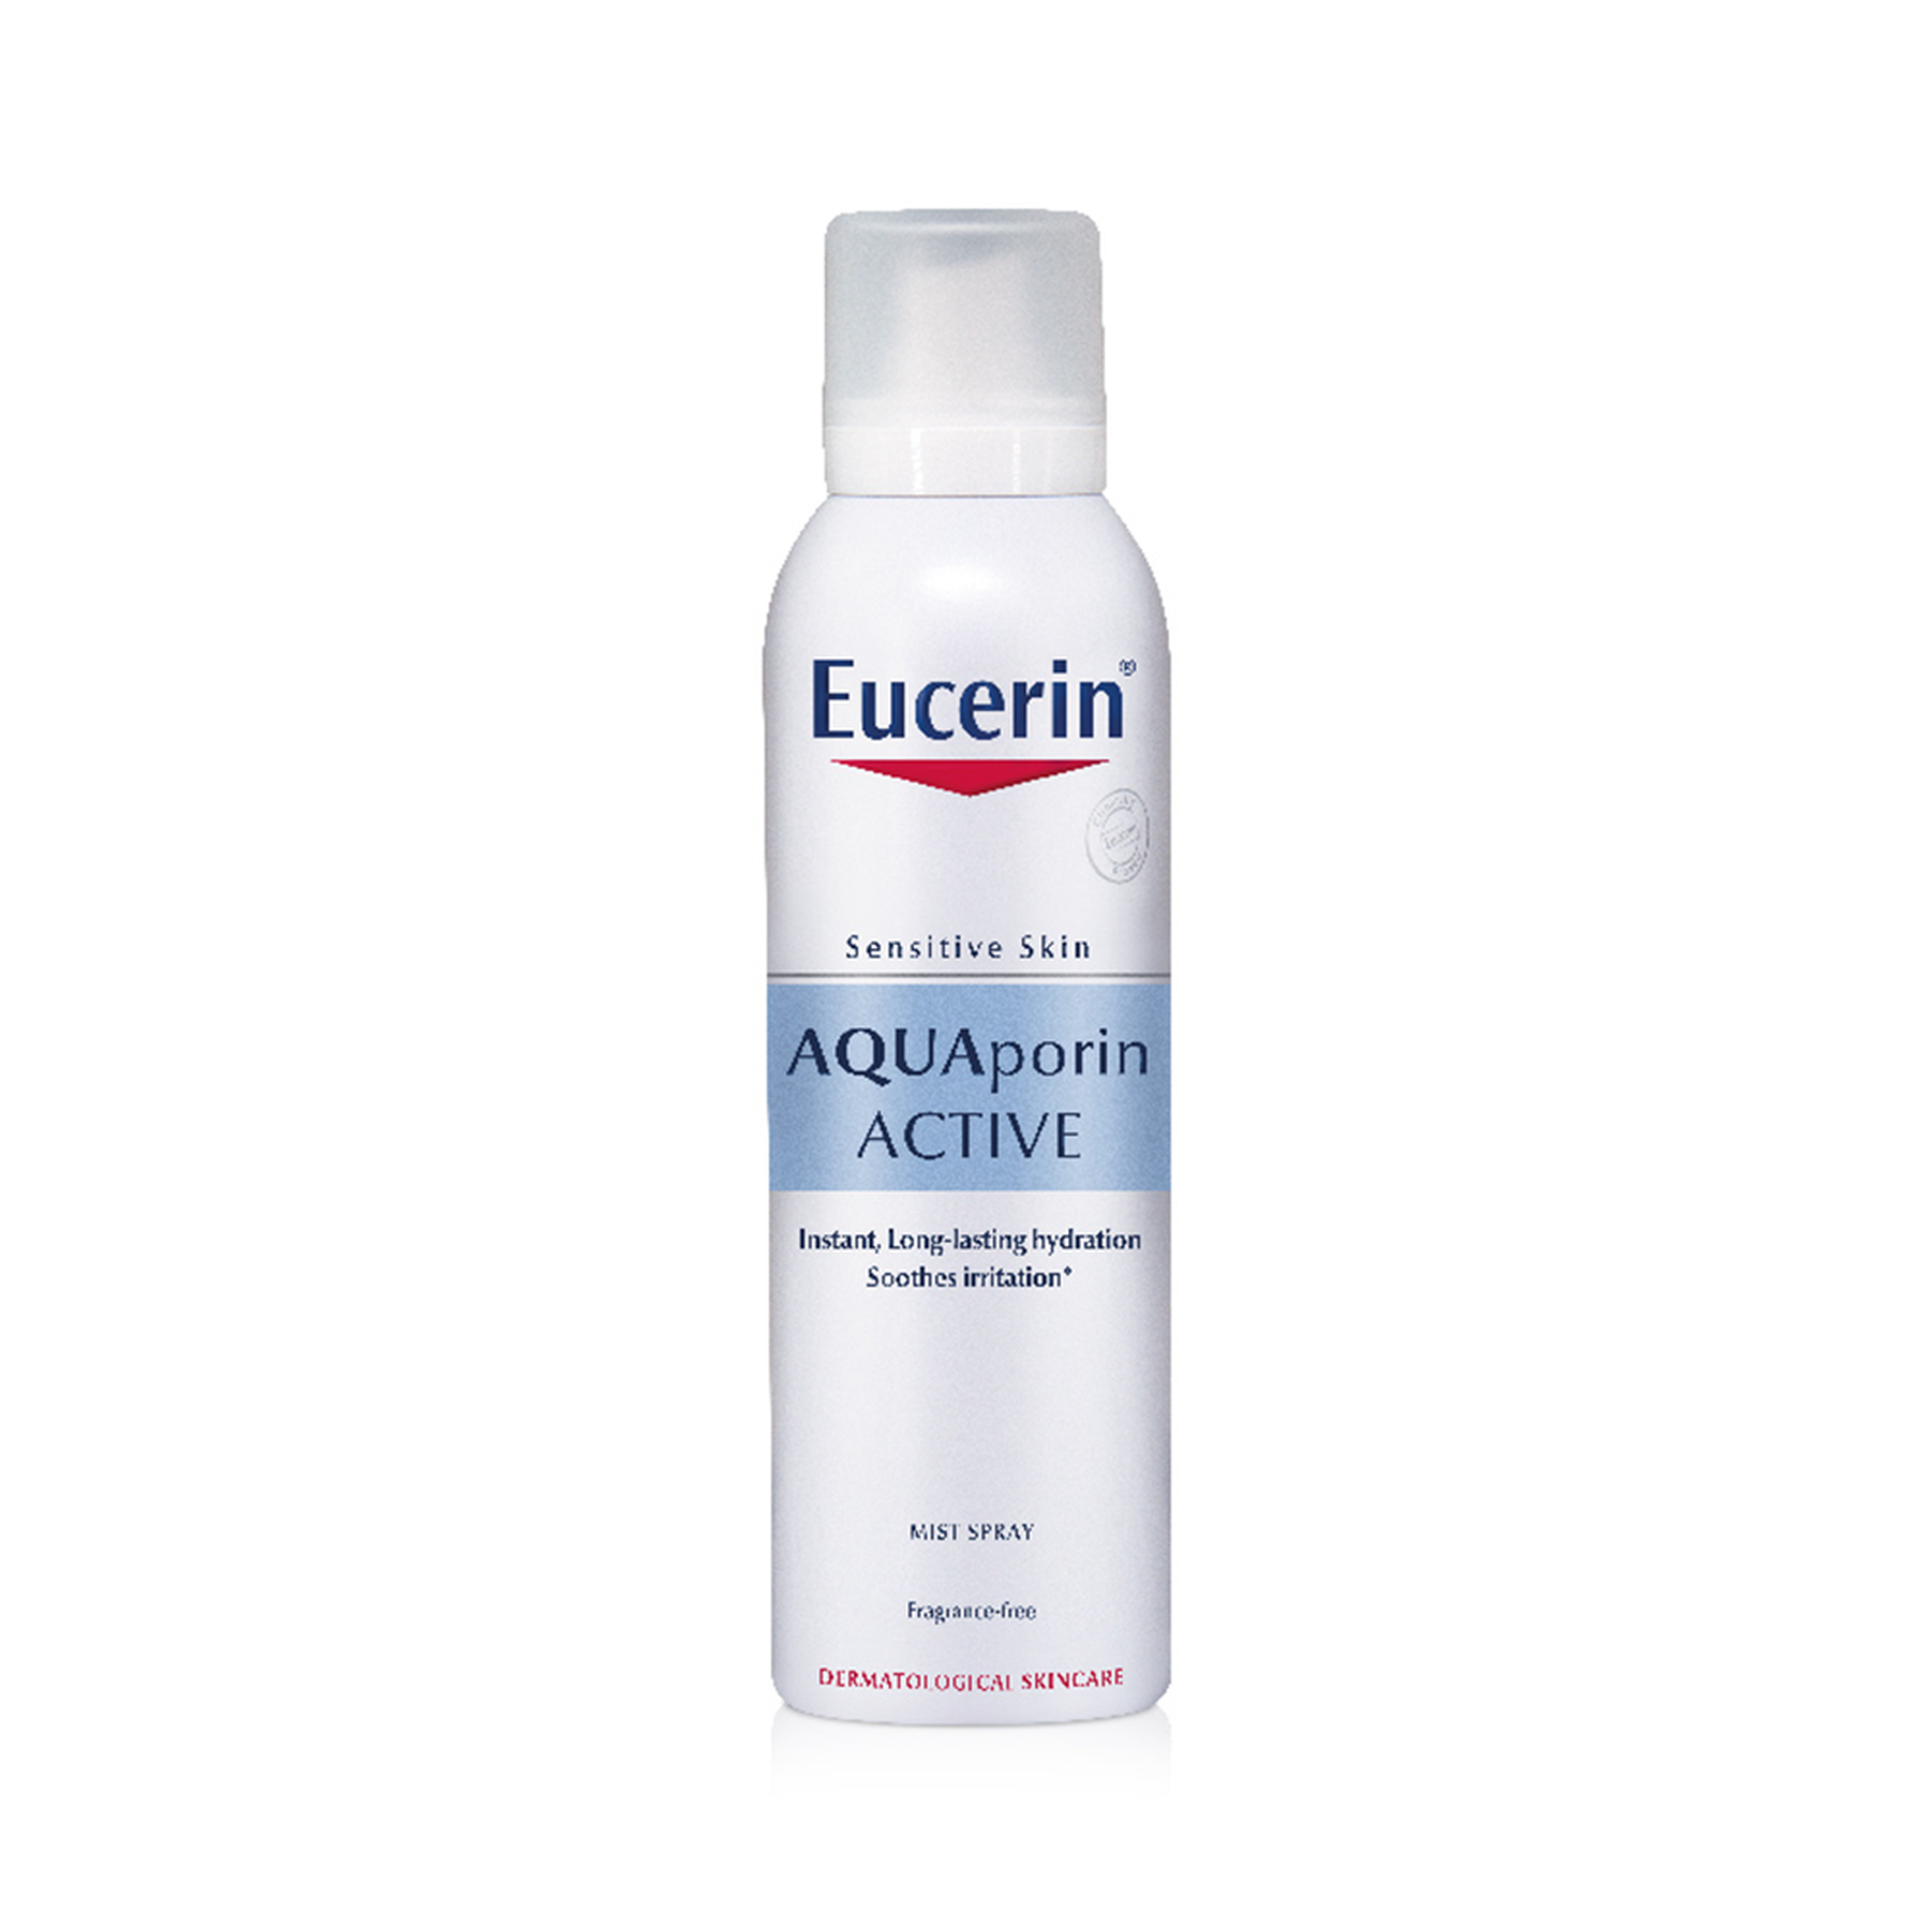 Nước xịt khoáng Eucerin Aquaporin Active Mist Spray dưỡng ẩm cho da nhạy cảm (150ml)